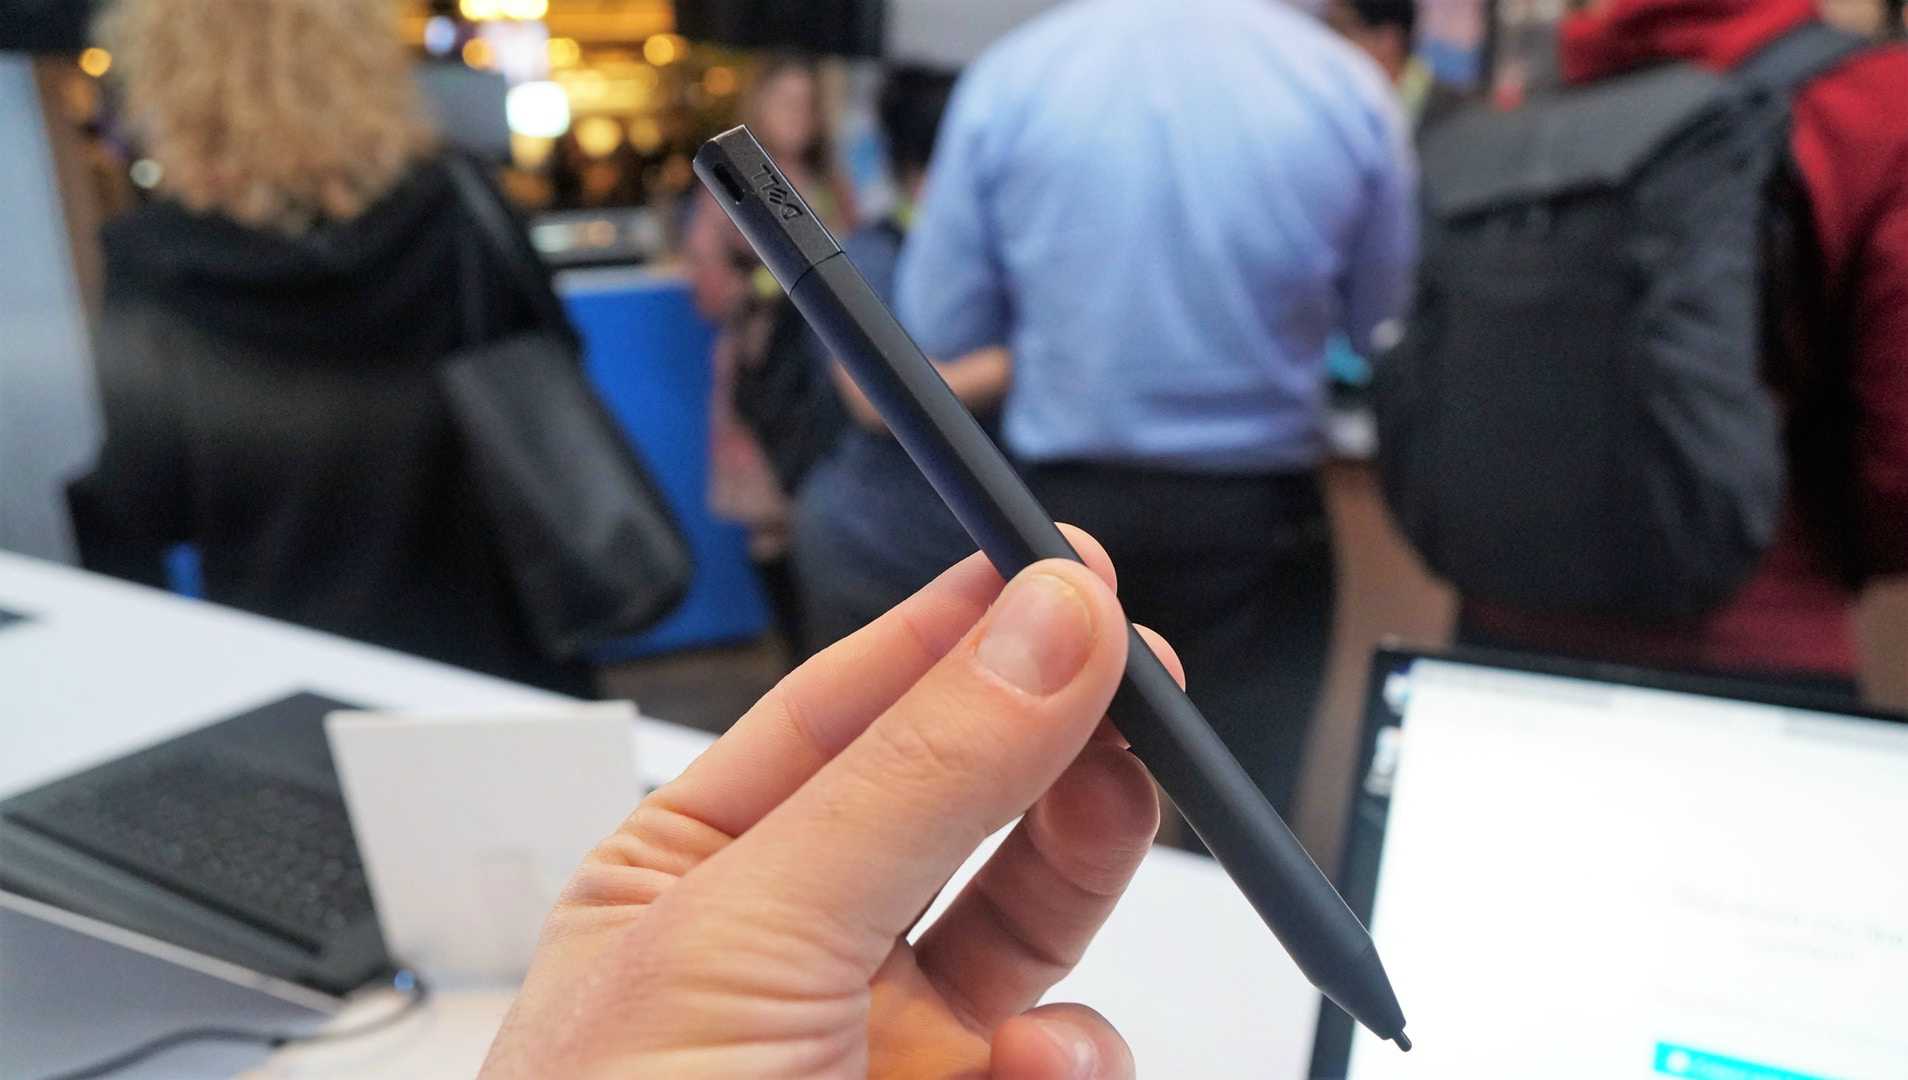 Dell Premium Active Pen